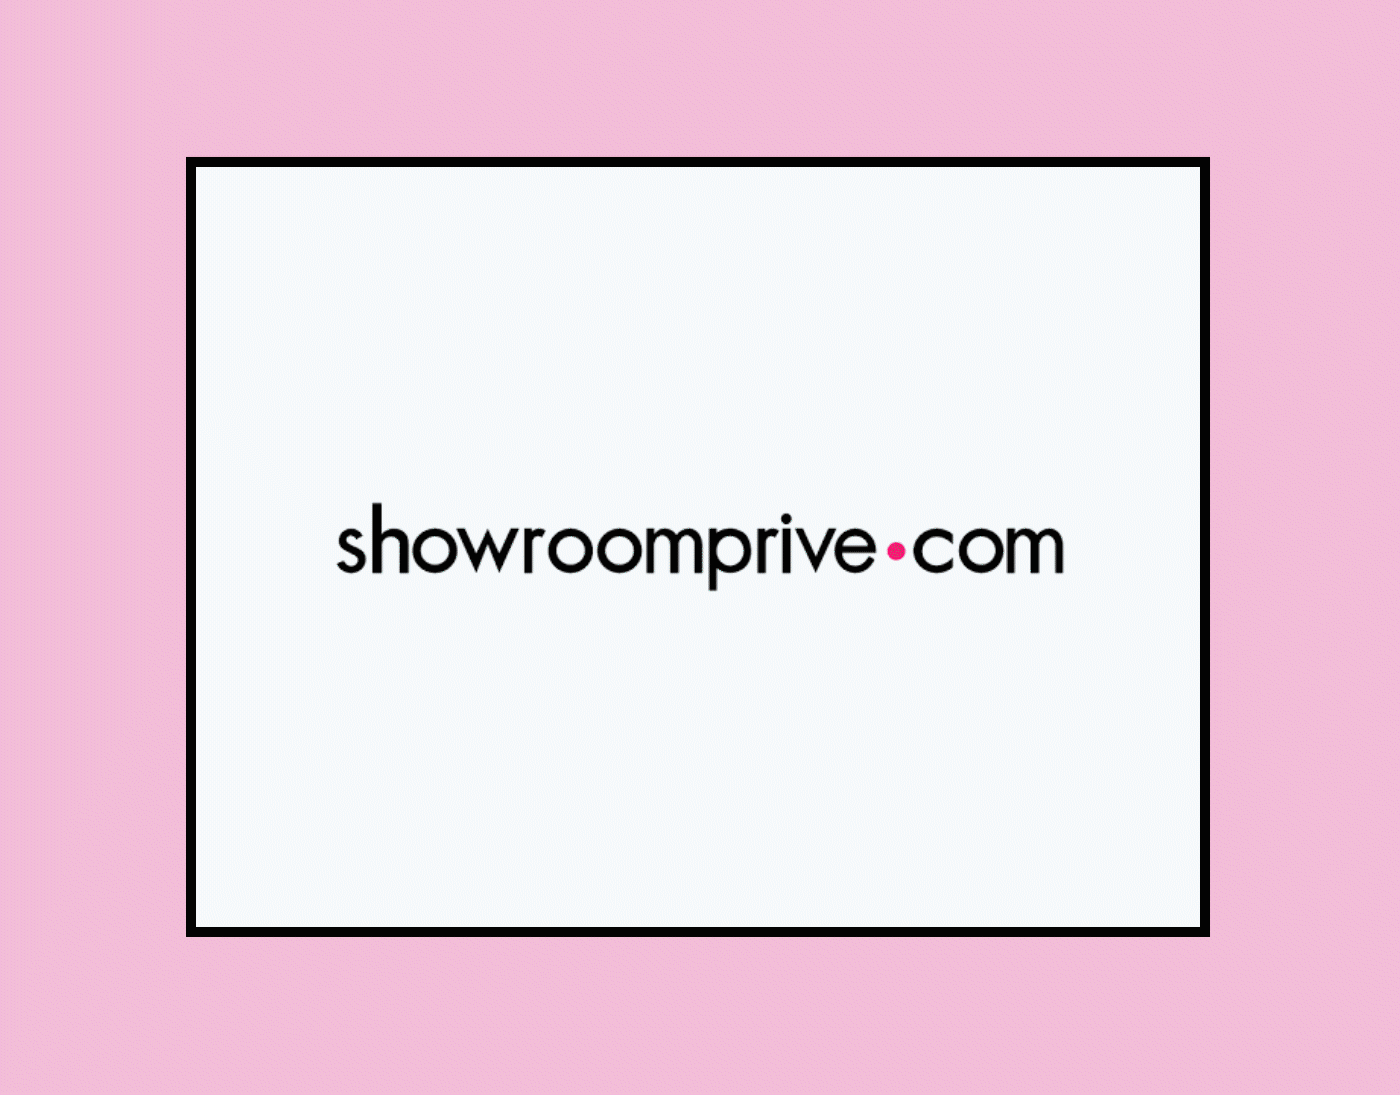 e-commerce integration mise en scène photoshop products Shadows Shopping showroomprive